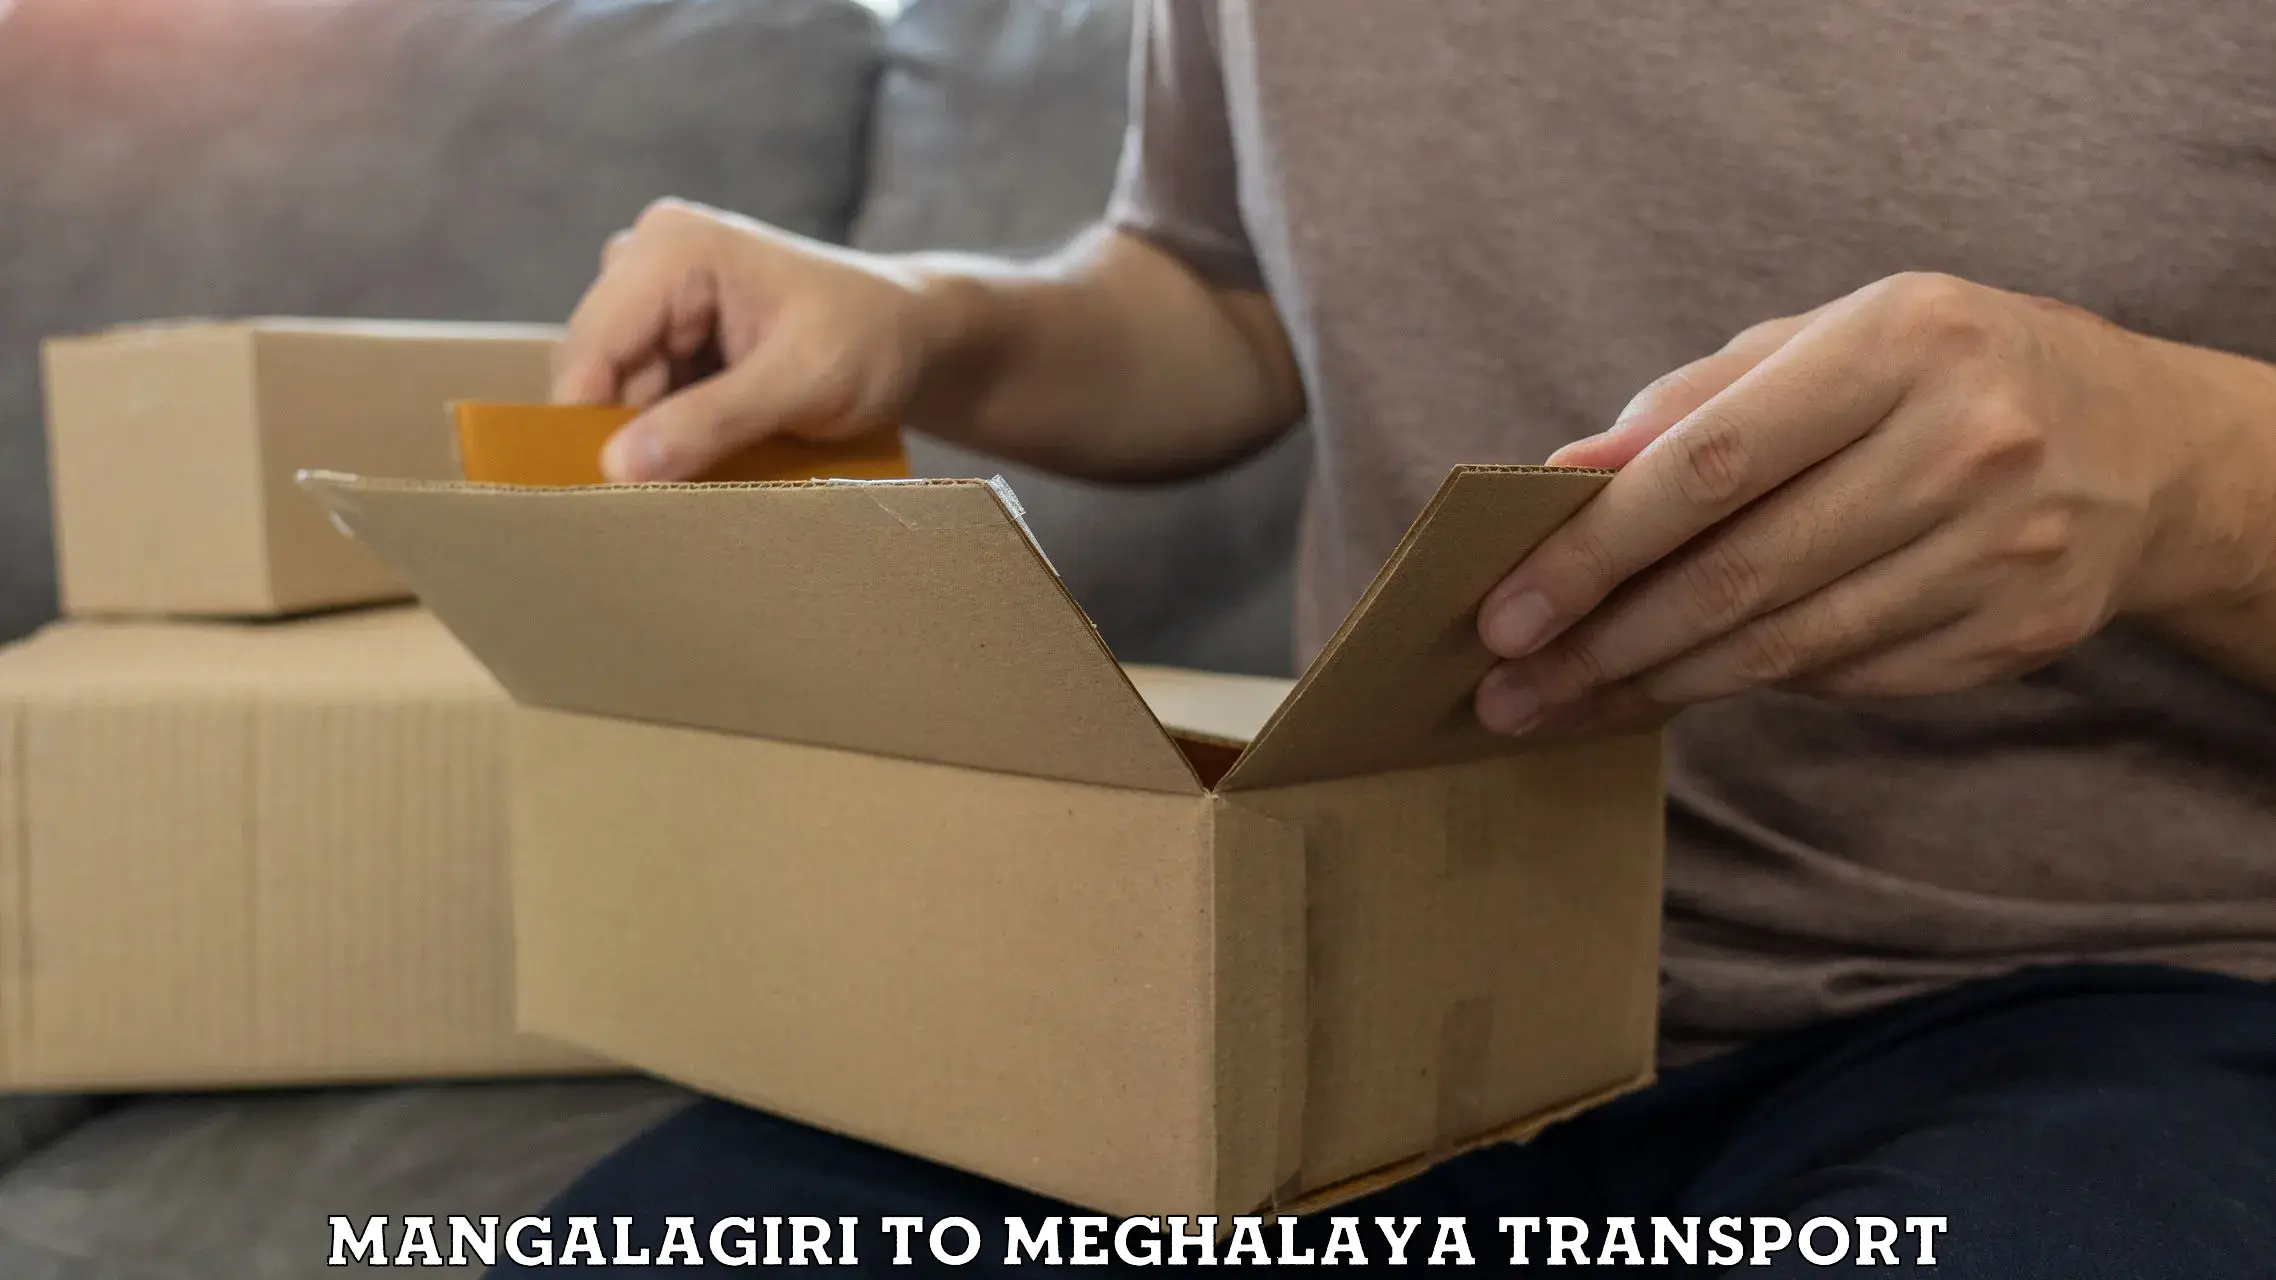 Express transport services Mangalagiri to Meghalaya